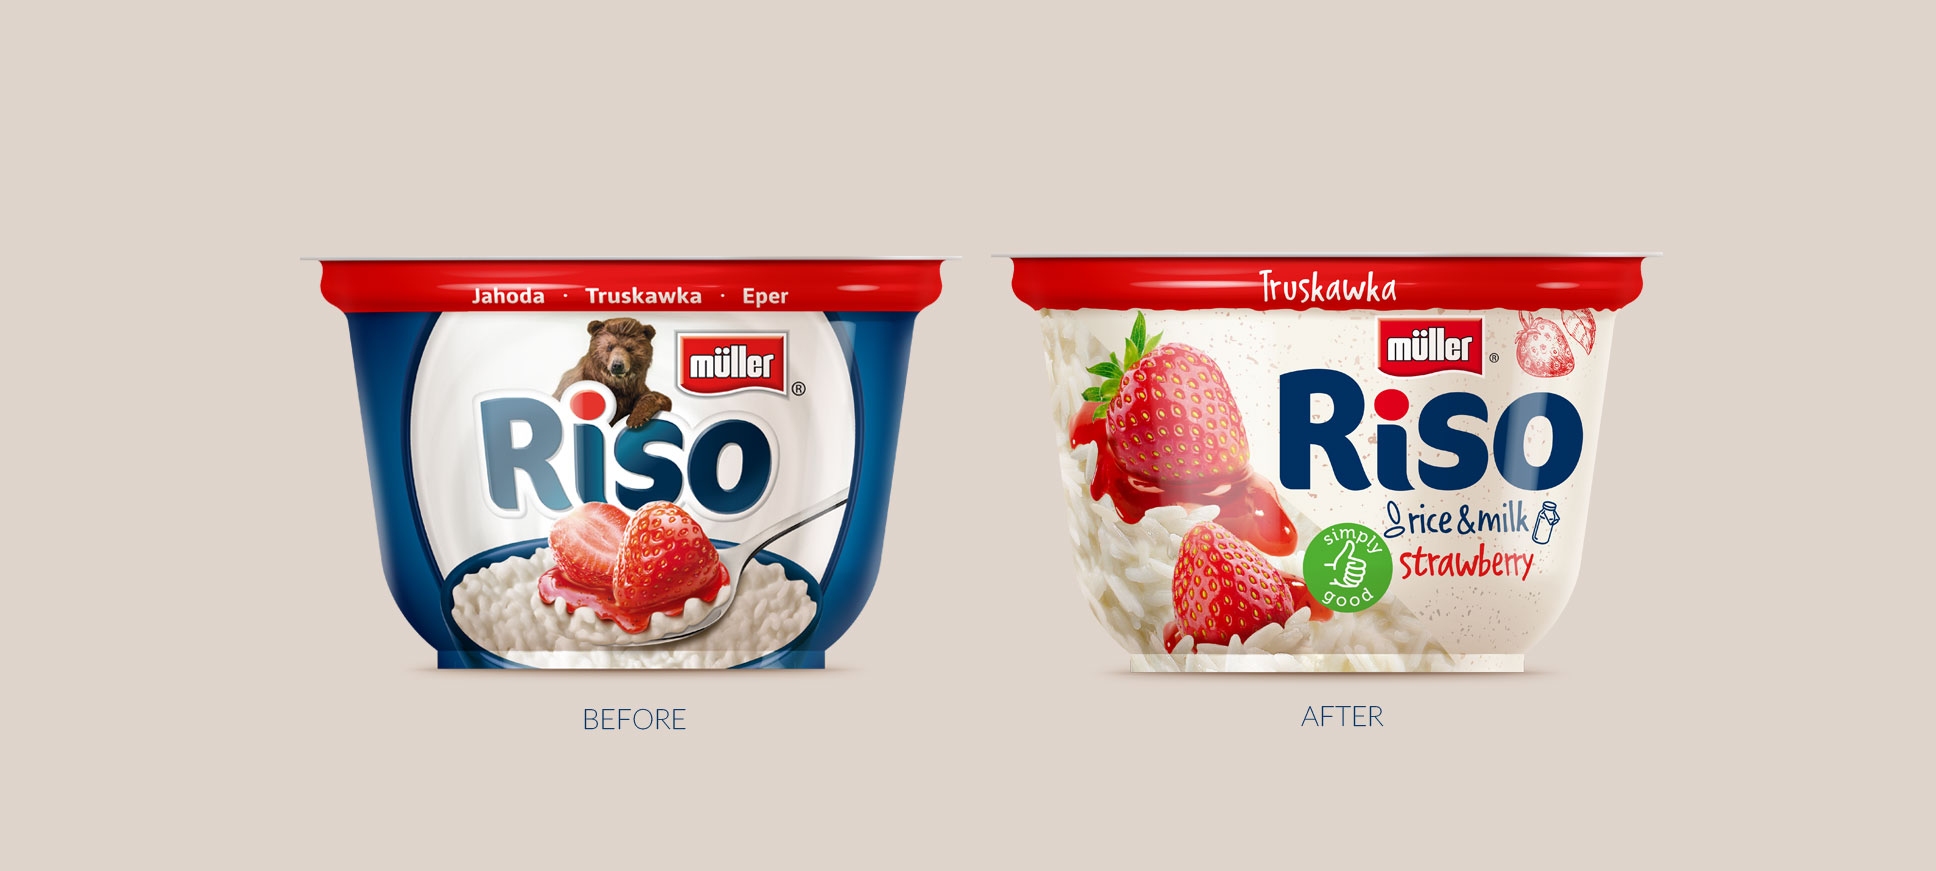 Branding Muller Riso - stary vs nowy design opakowań.